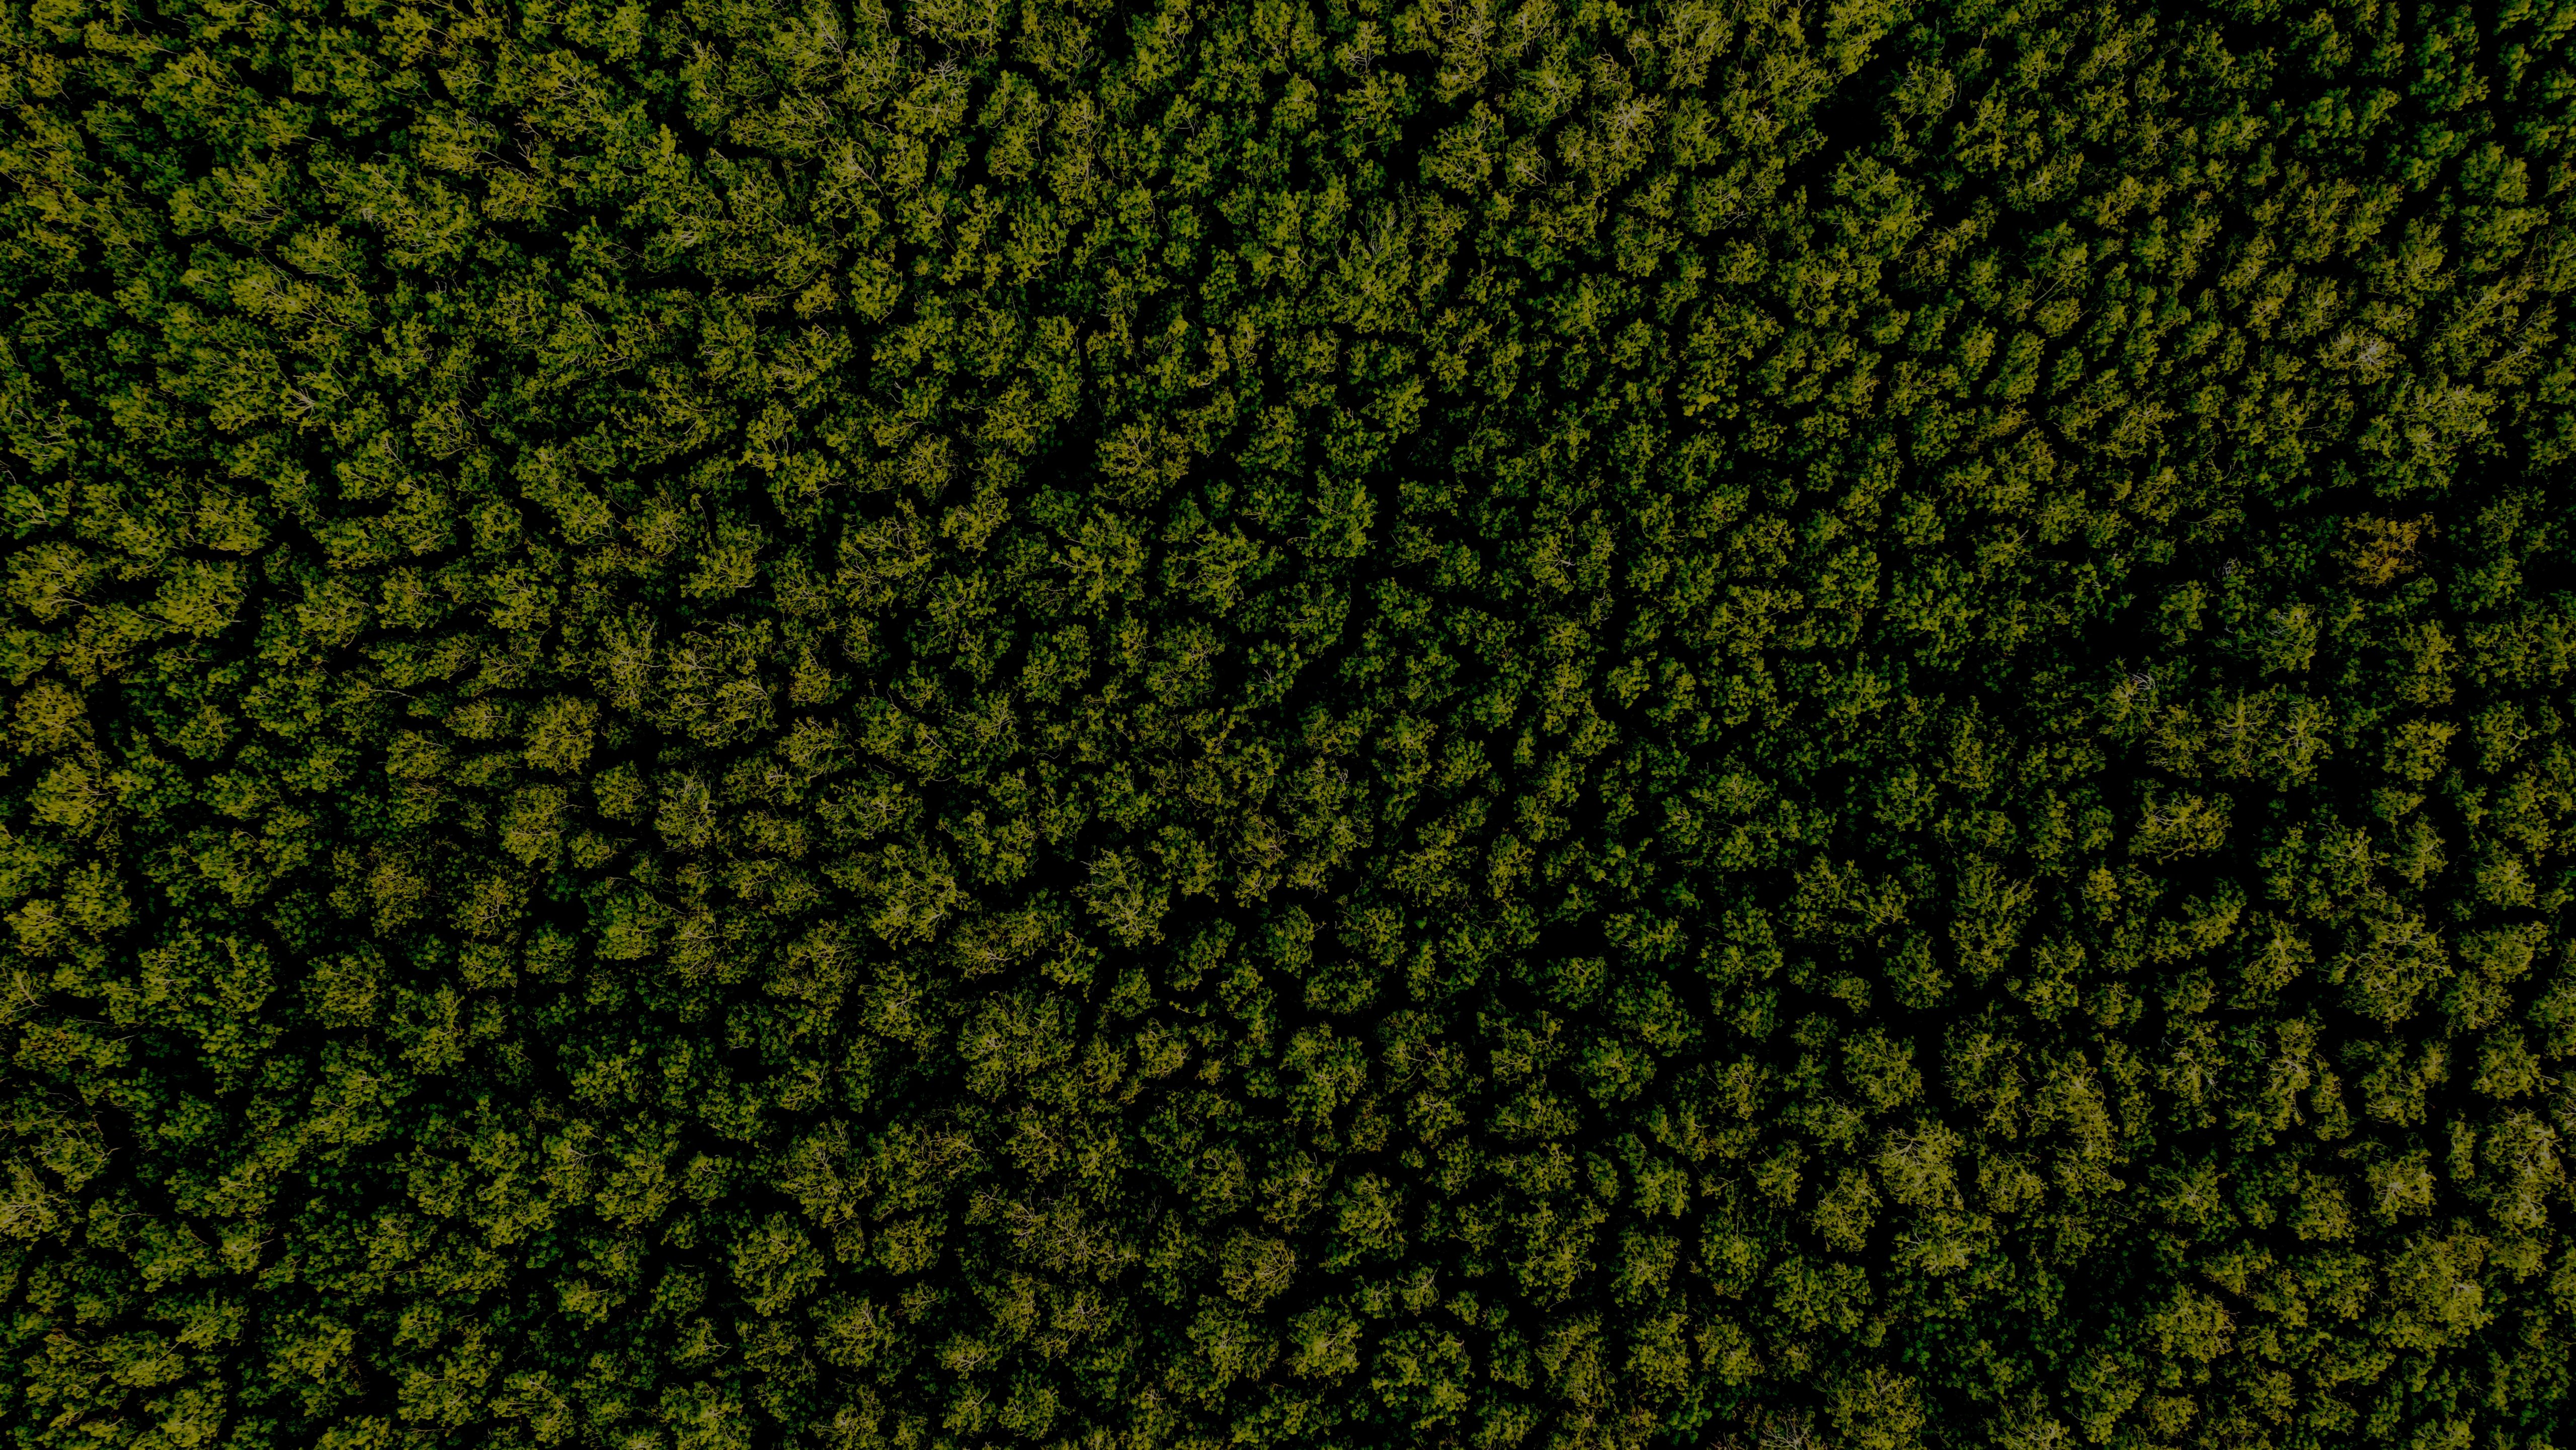 Luftaufnahme Bäume im Wald Draufsicht Luftaufnahme des Regenwald-Ökosystems und gesundes Umweltkonzept und Hintergrundtextur der Waldansicht grüne Bäume von oben Textkopie.